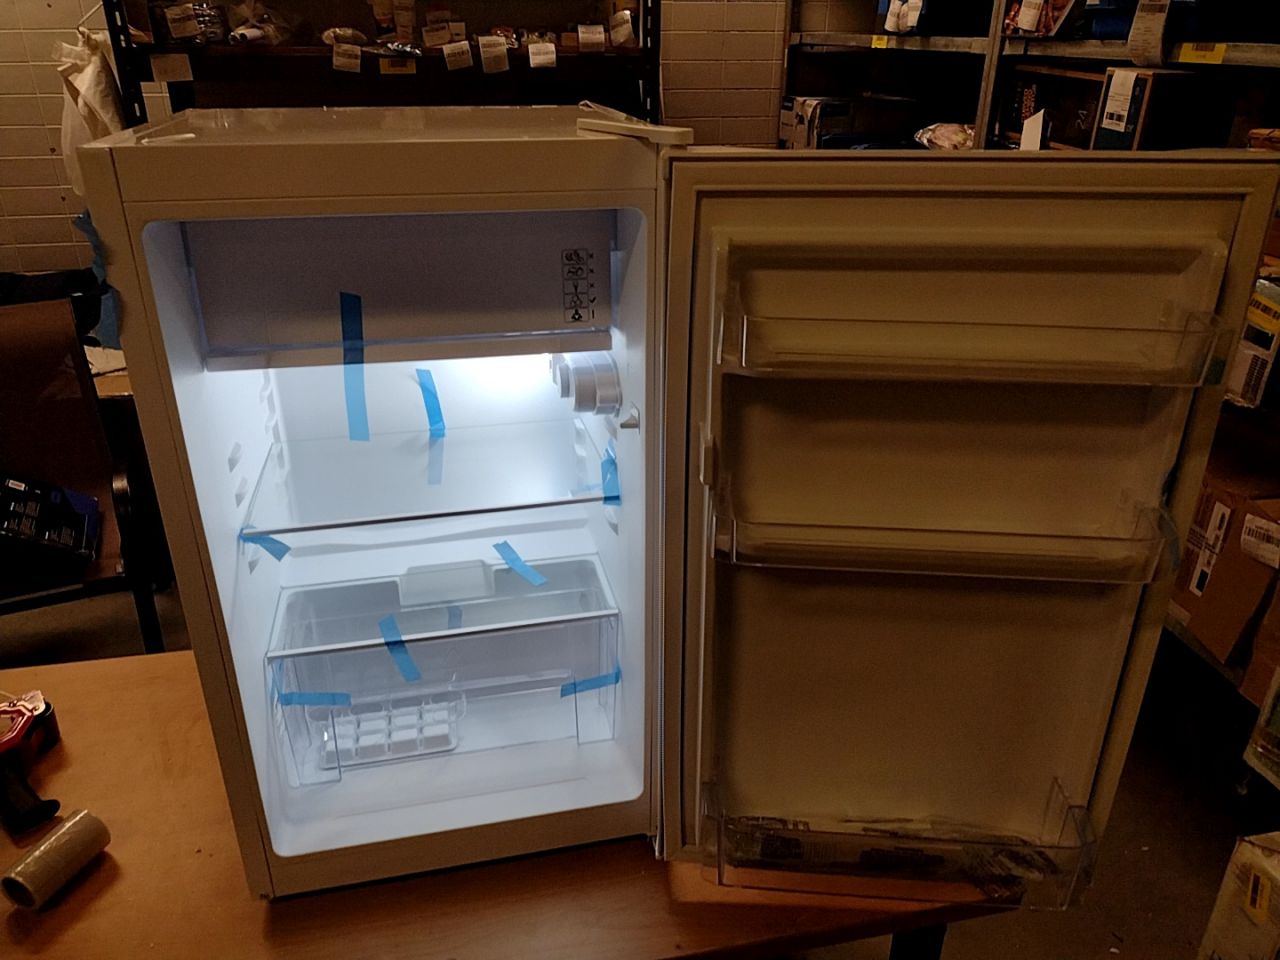 Jednodveřová lednice Orava RGO-101 AW